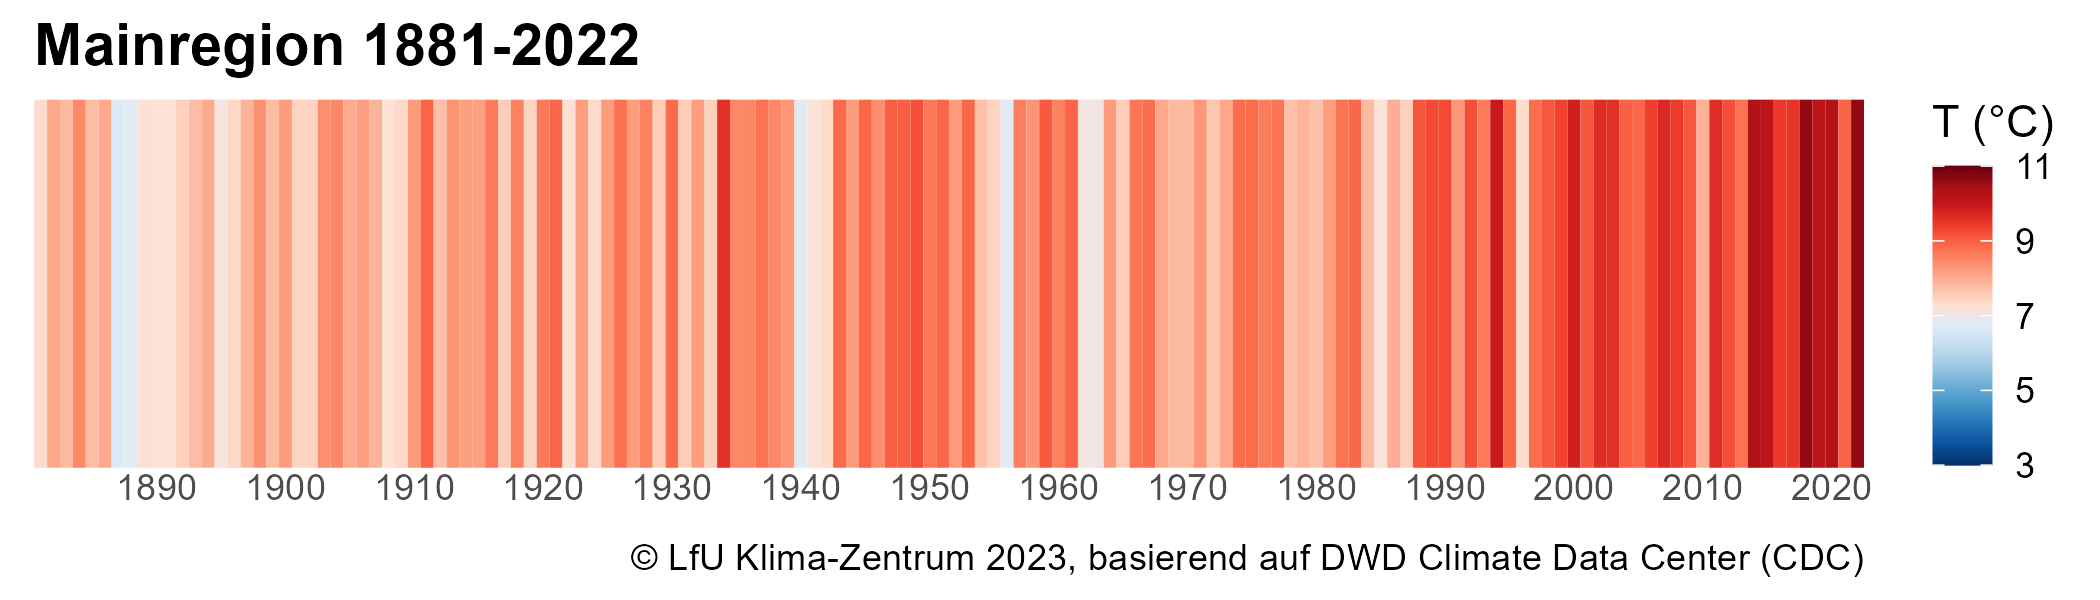 Warming Stripes für die Bayerischen Klimaregionen.